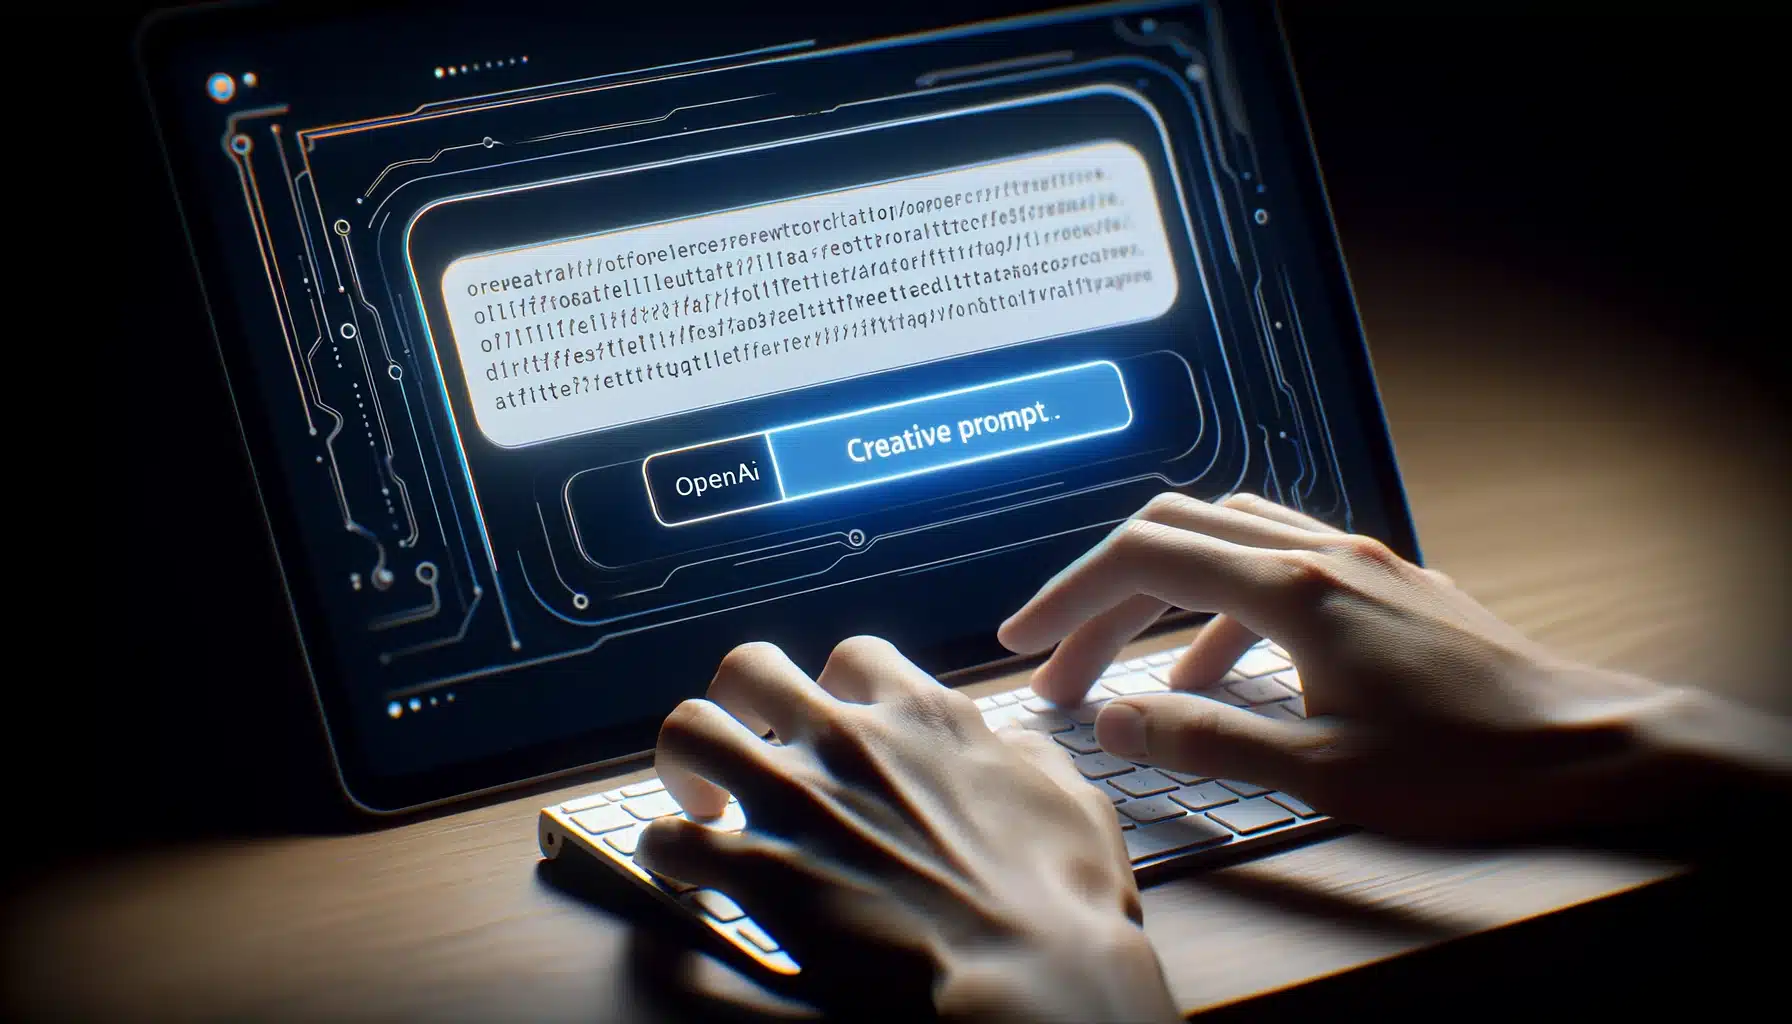 vue en gros plan et à la première personne des mains en train de taper un prompt dans un champ de texte sur un écran d'ordinateur, avec le logo OpenAI visible dans un coin de l'écran